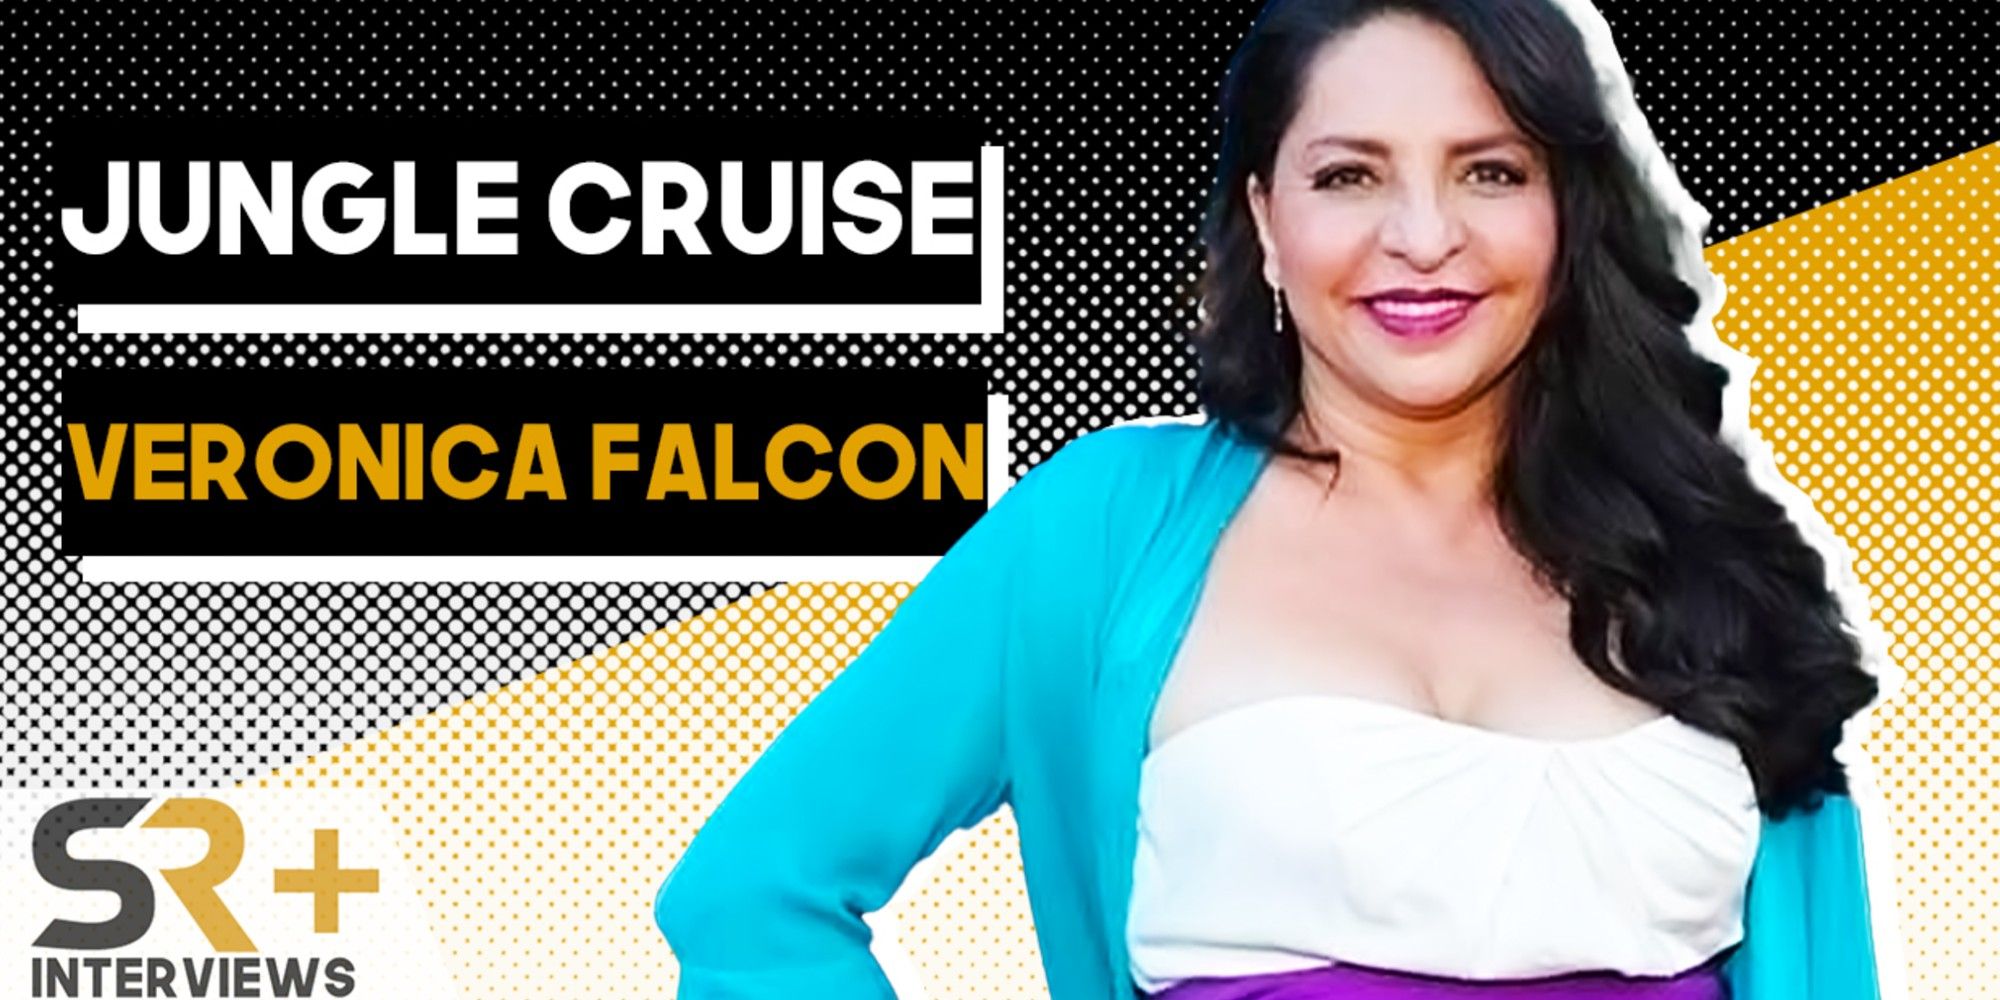 Veronica Falcon Jungle Cruise